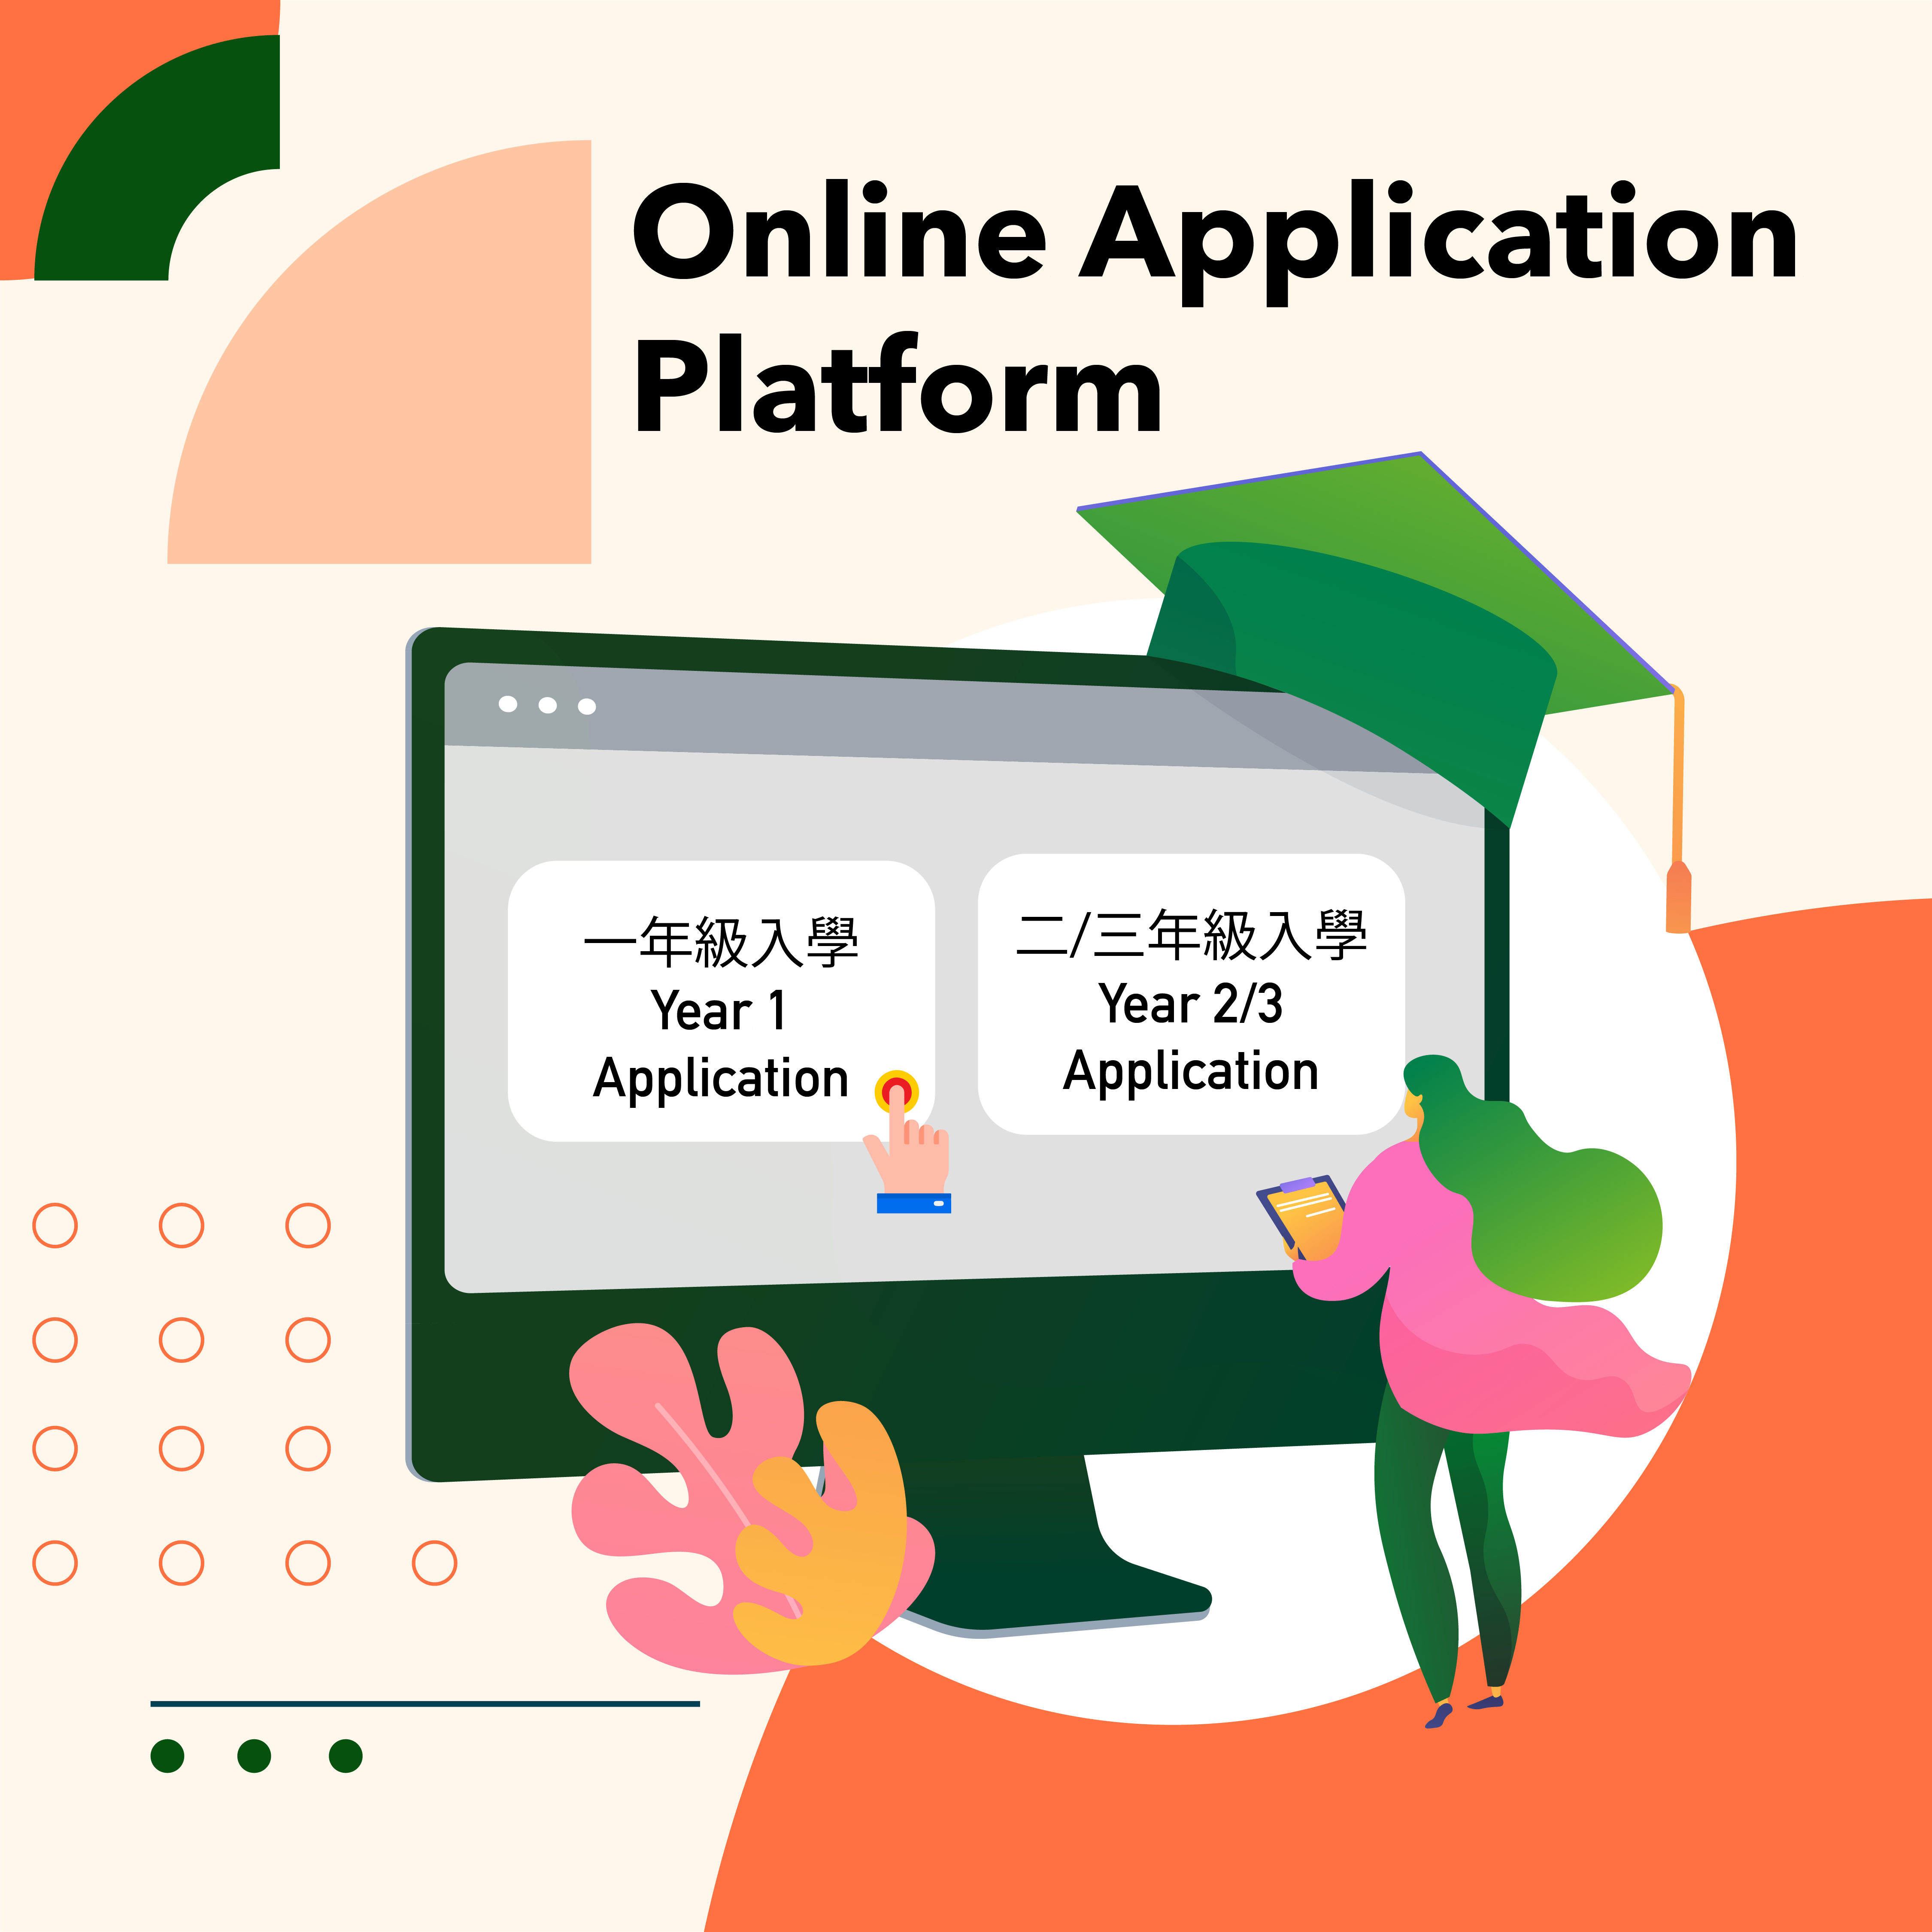 Online Application Platform